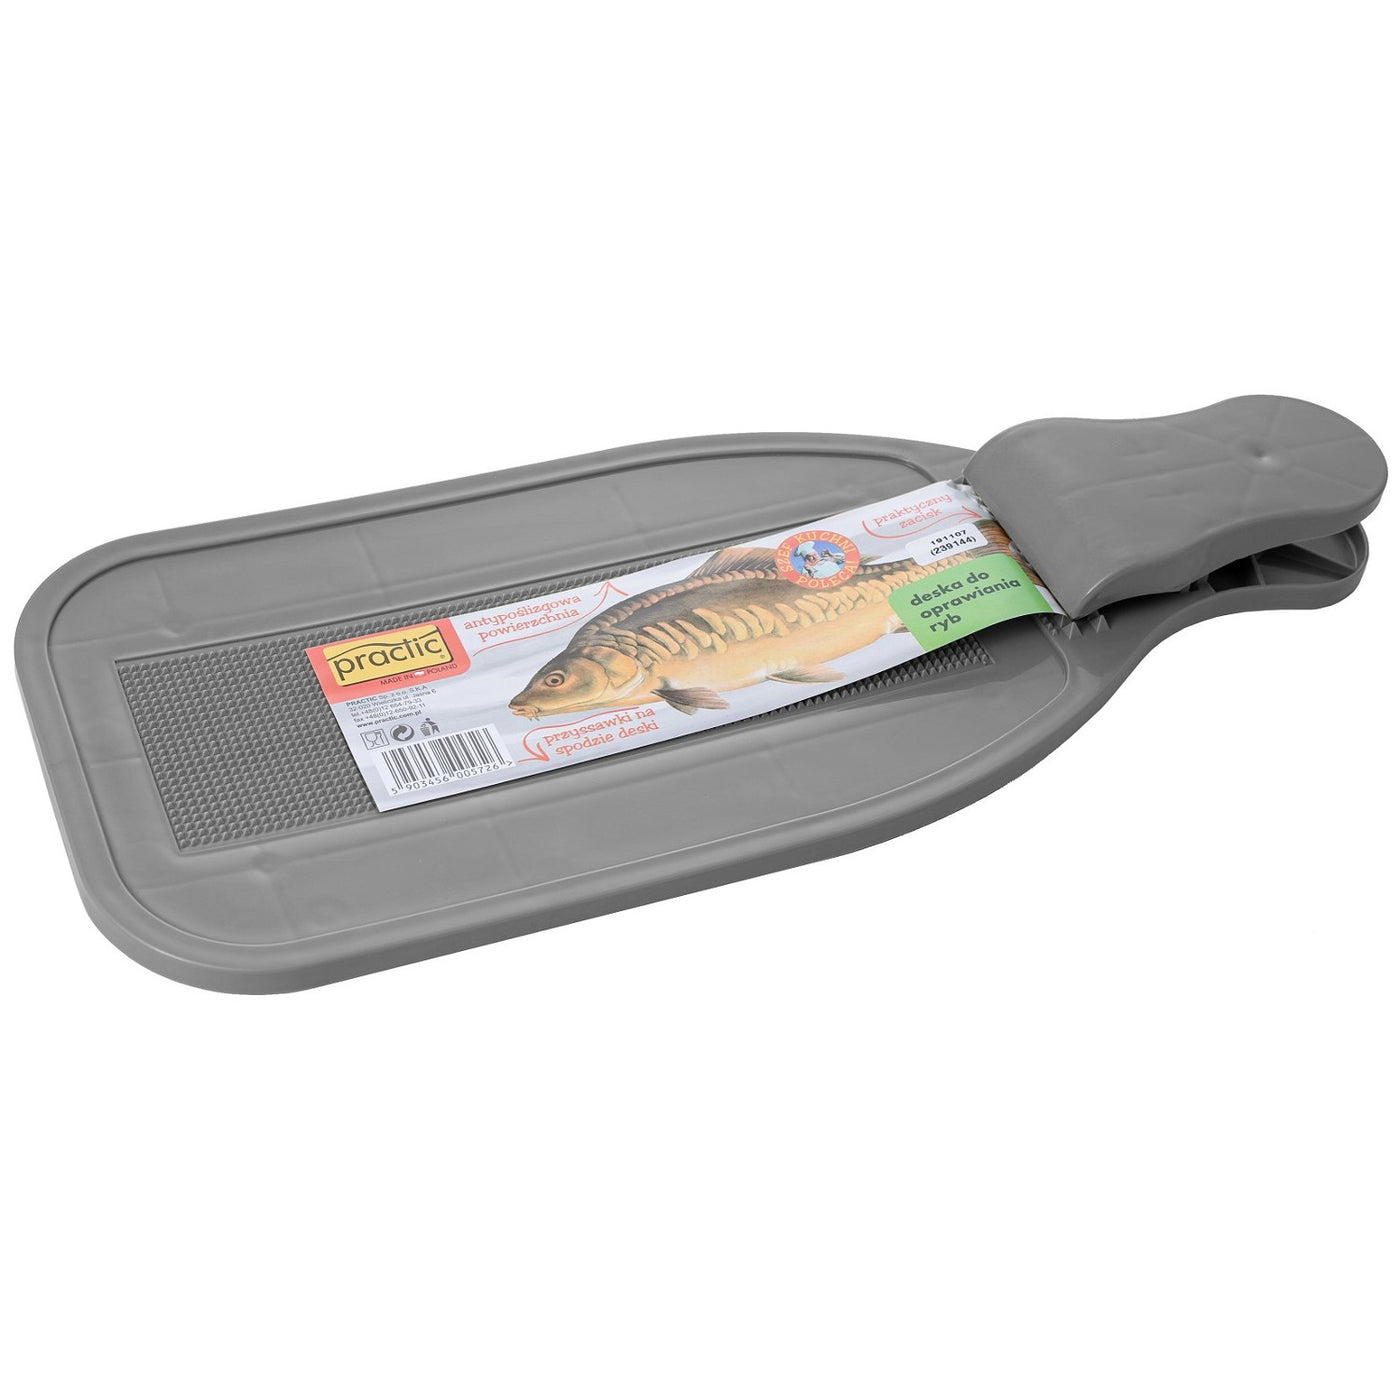 Deska kuchenna Practic, do oprawiania ryb, szara, 10011693